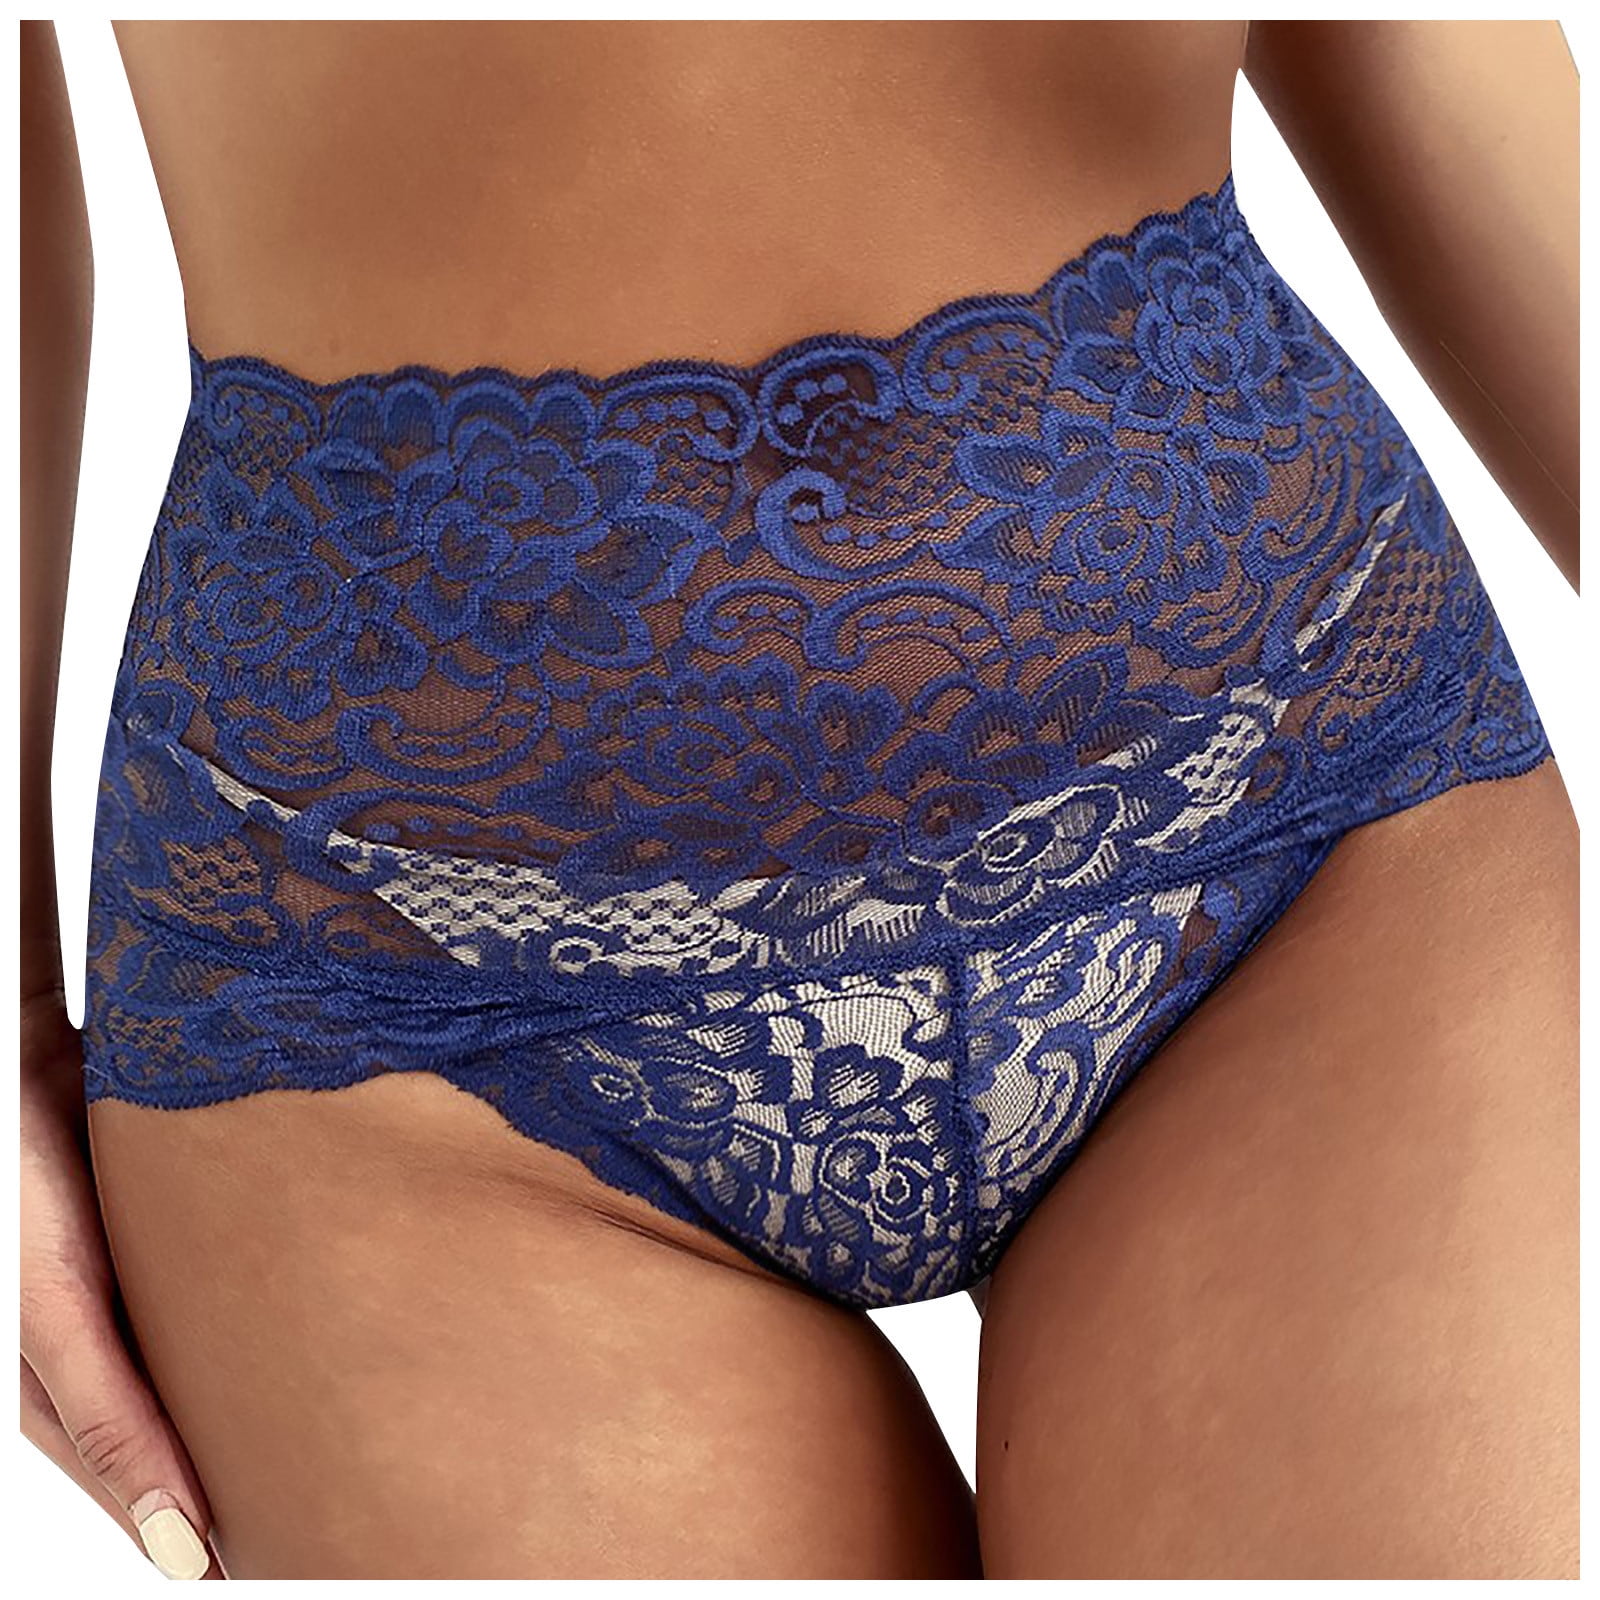 high-end brand T-pants romantic temptation lace bra set - Power